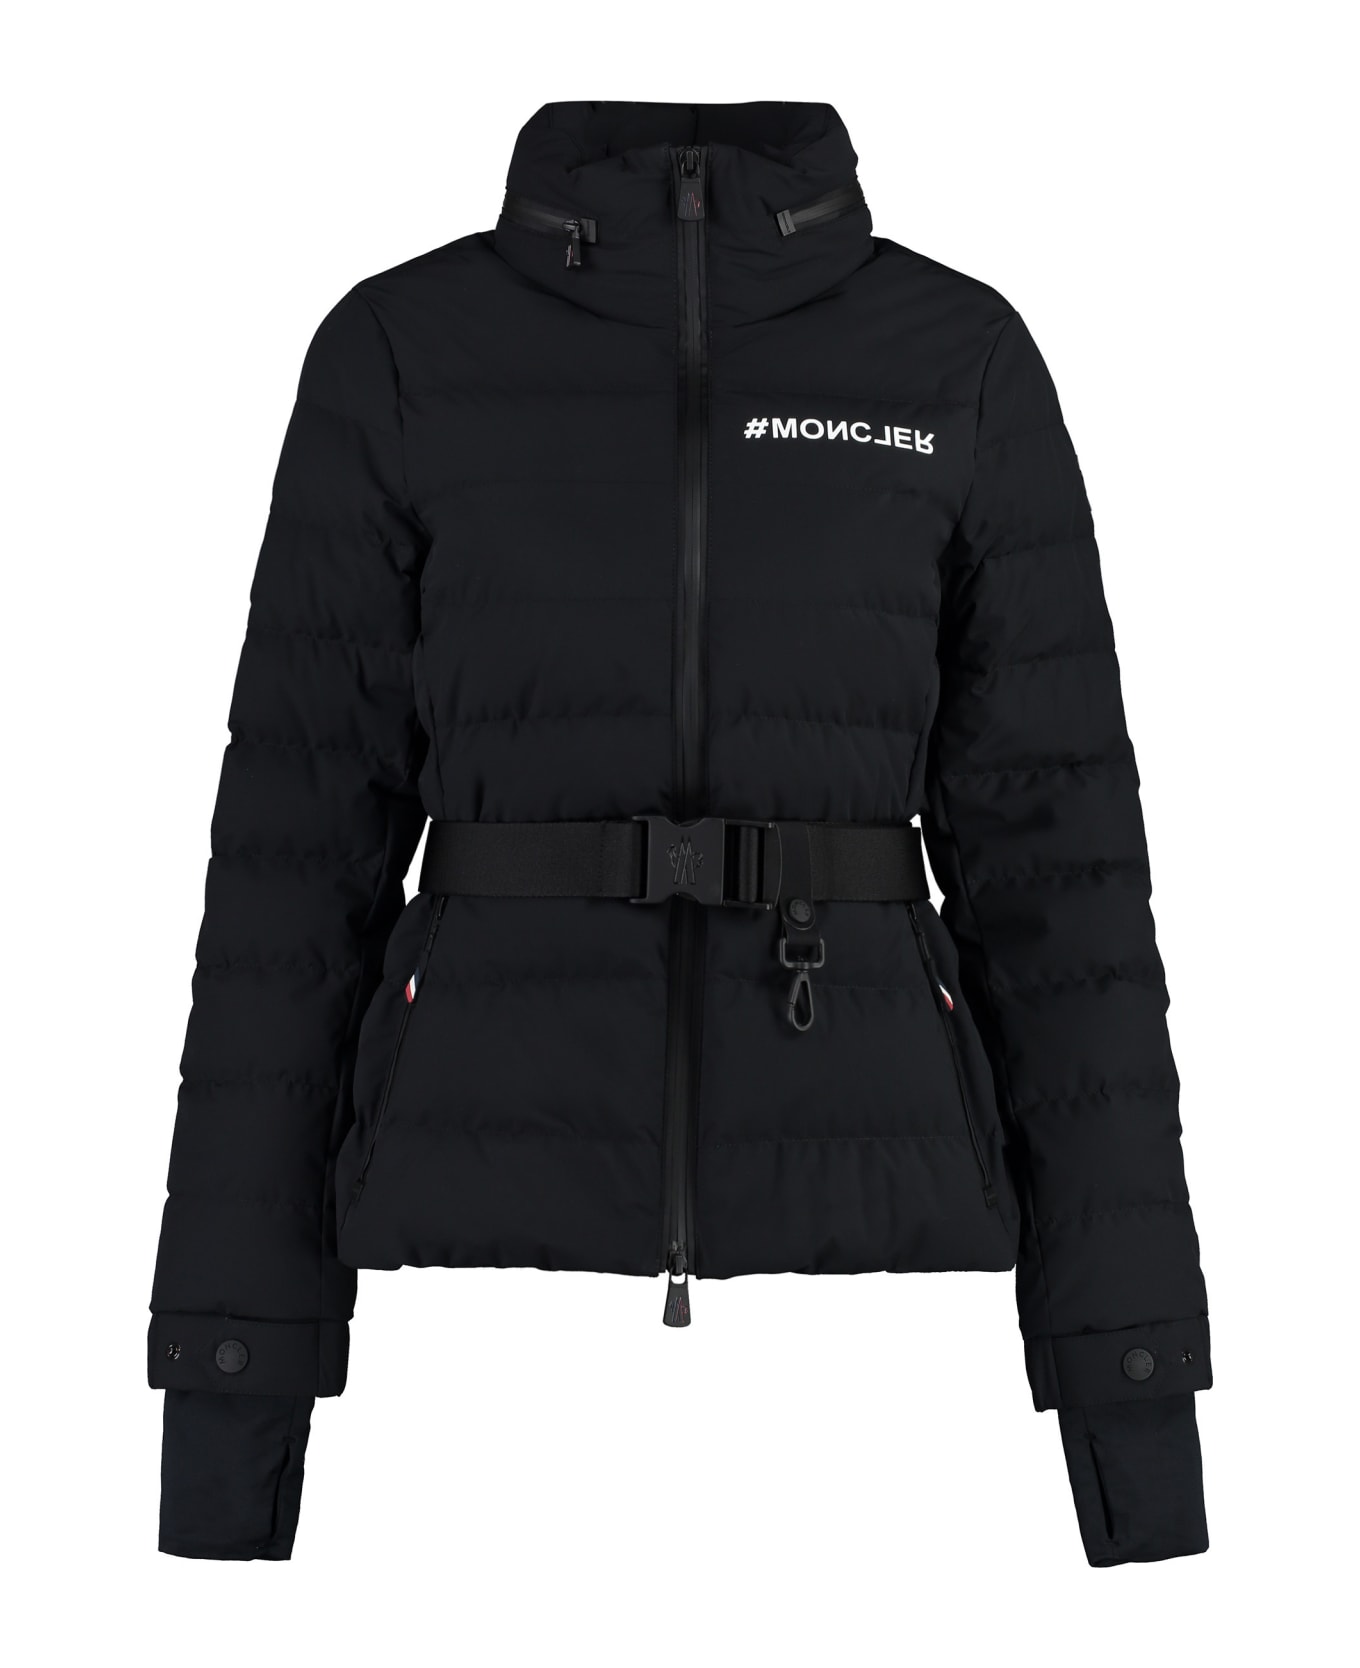 Moncler Grenoble Bettex Ski Down Jacket - Black